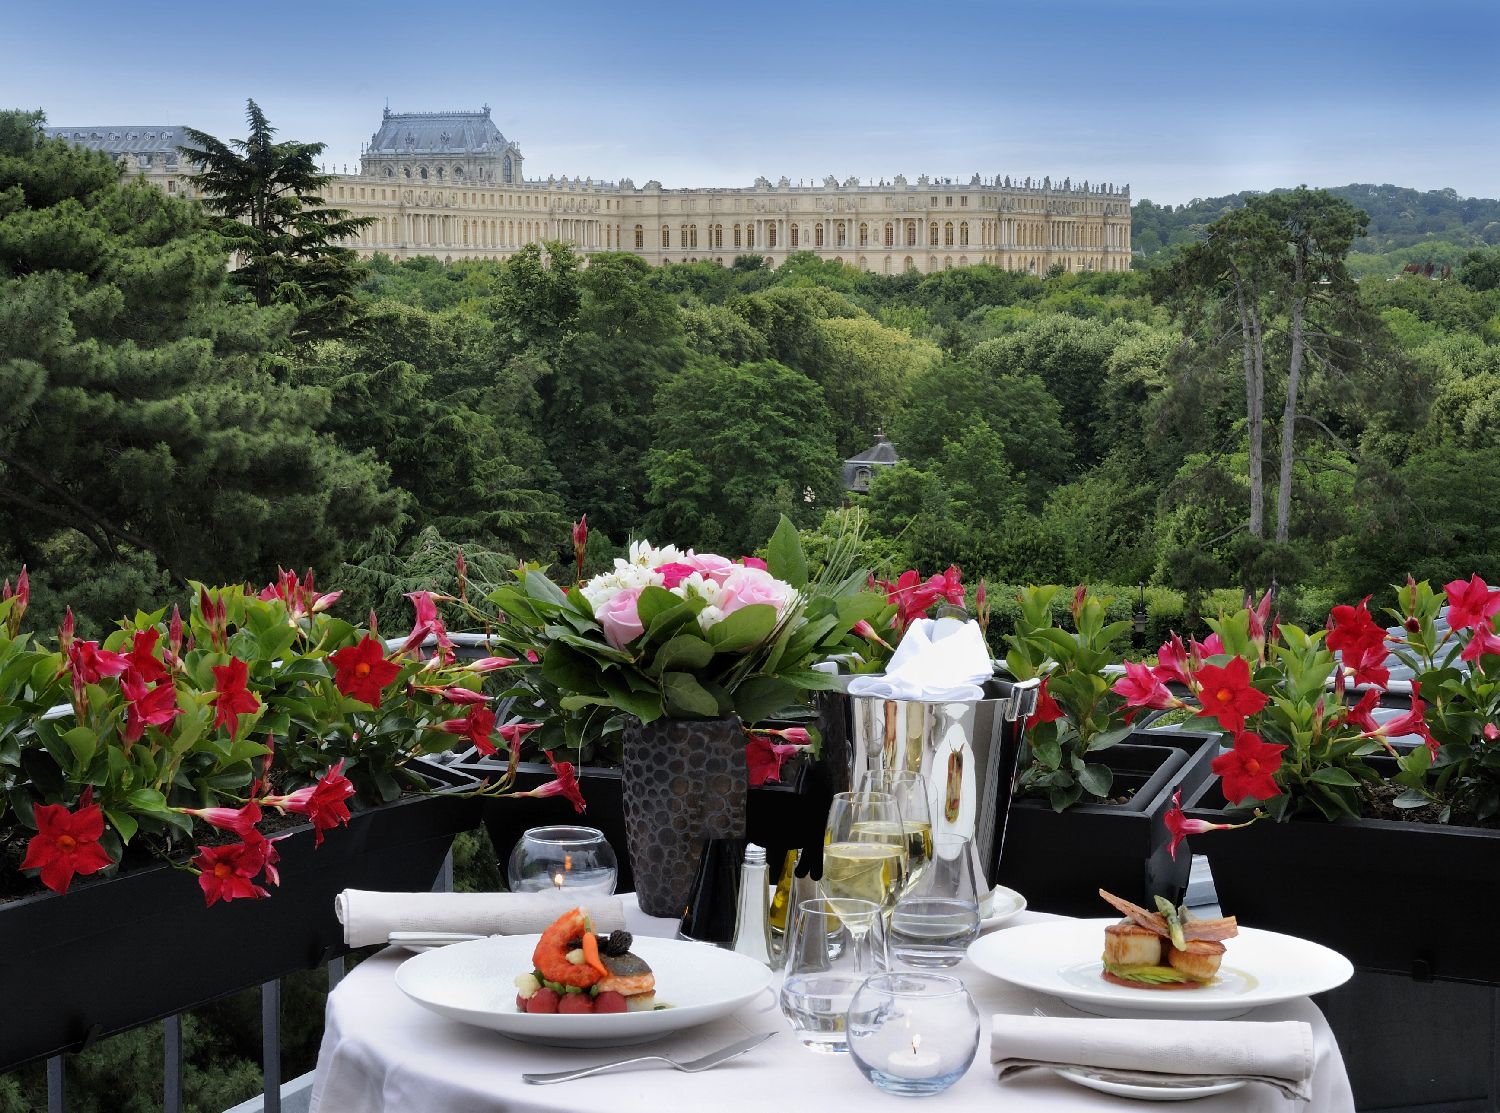 golf-expedition-golf-reizen-frankrijk-regio-parijs-trianon-palace-versailles-buffet-terras-uitzicht-op-landschap-kasteel.jpg